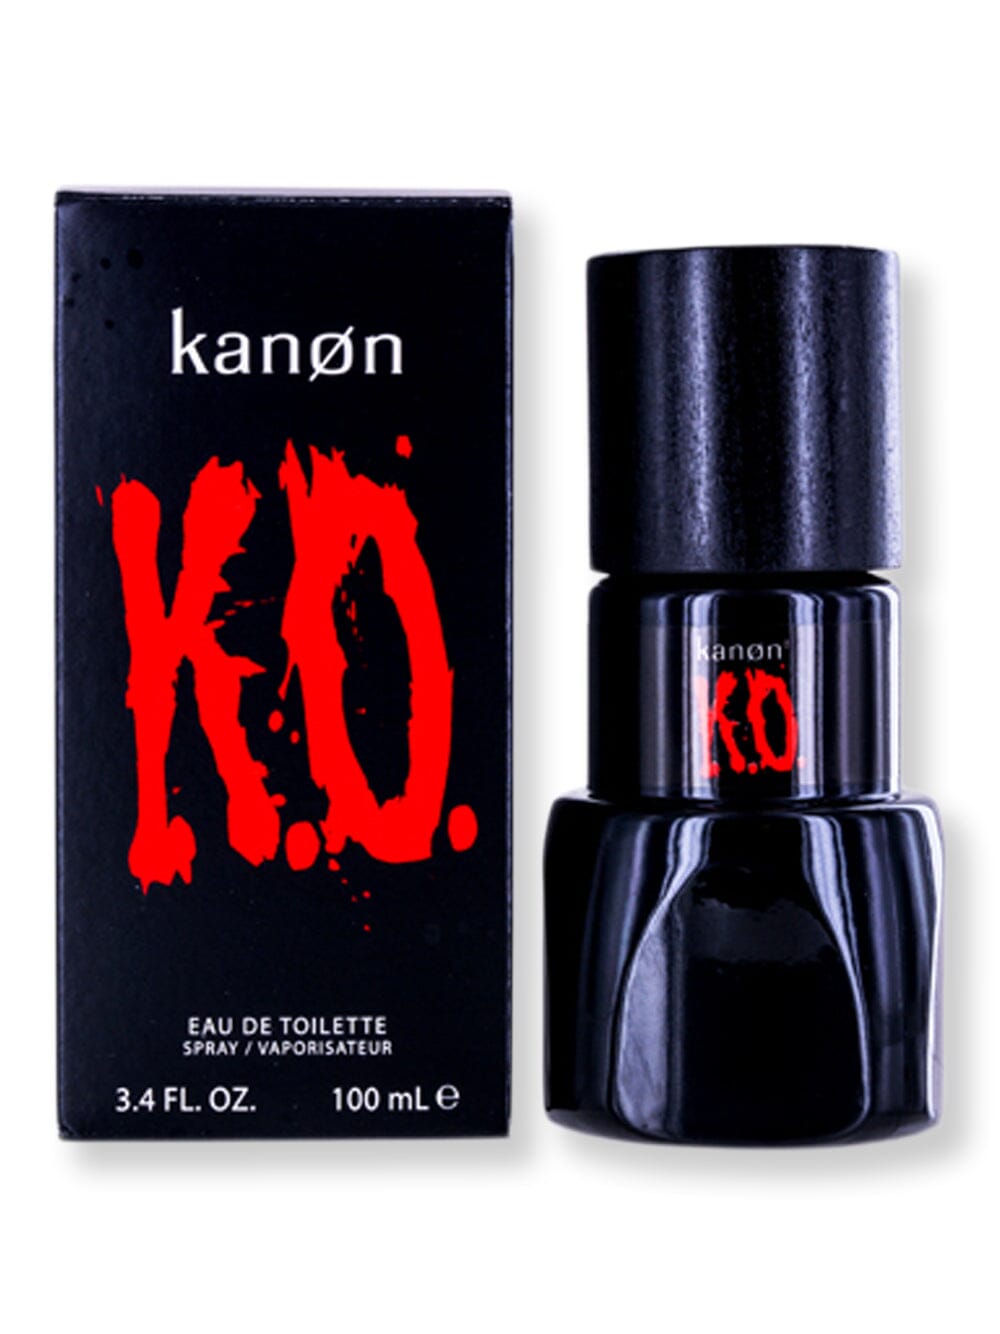 Kanon Kanon Ko EDT Spray 3.3 oz100 ml Perfume 